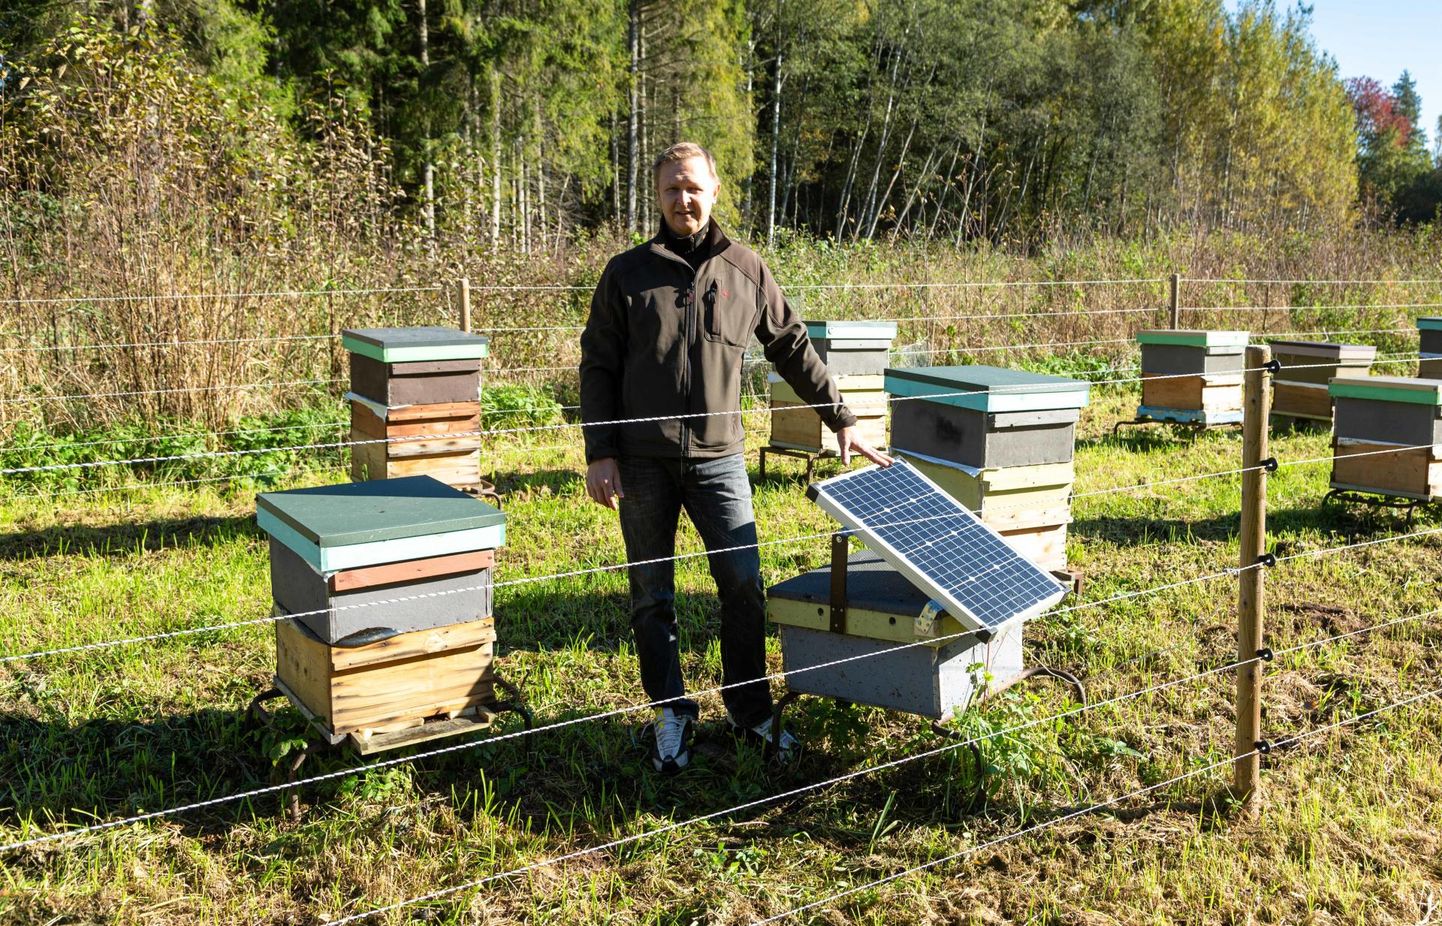 Sangaste mesinik Rein Männiste on tarude ümber rajanud päikeseenergial töötava pingestatud traatidest piirdeaia.